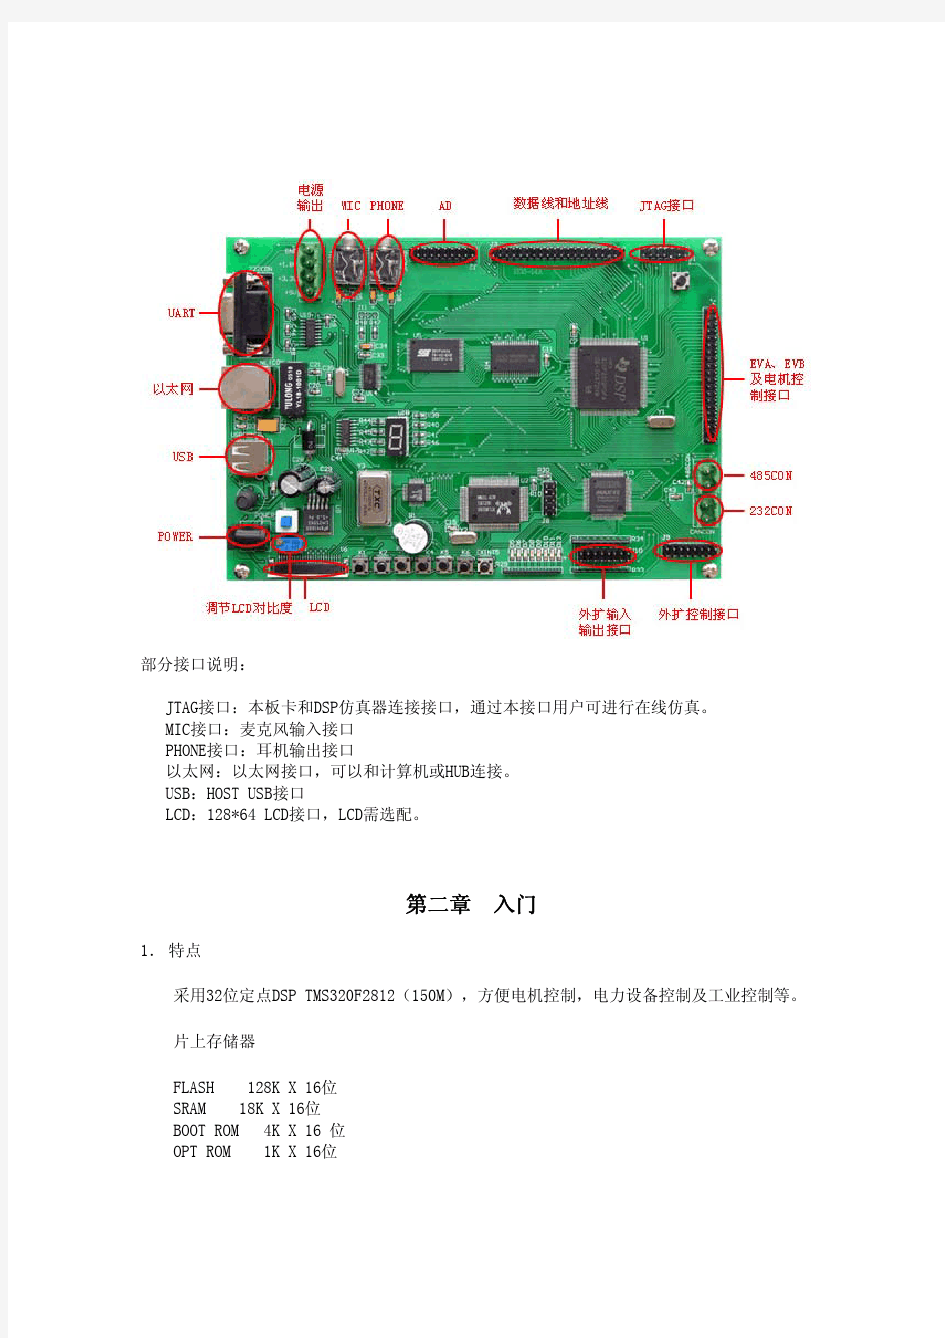 DSP2812开发板说明书